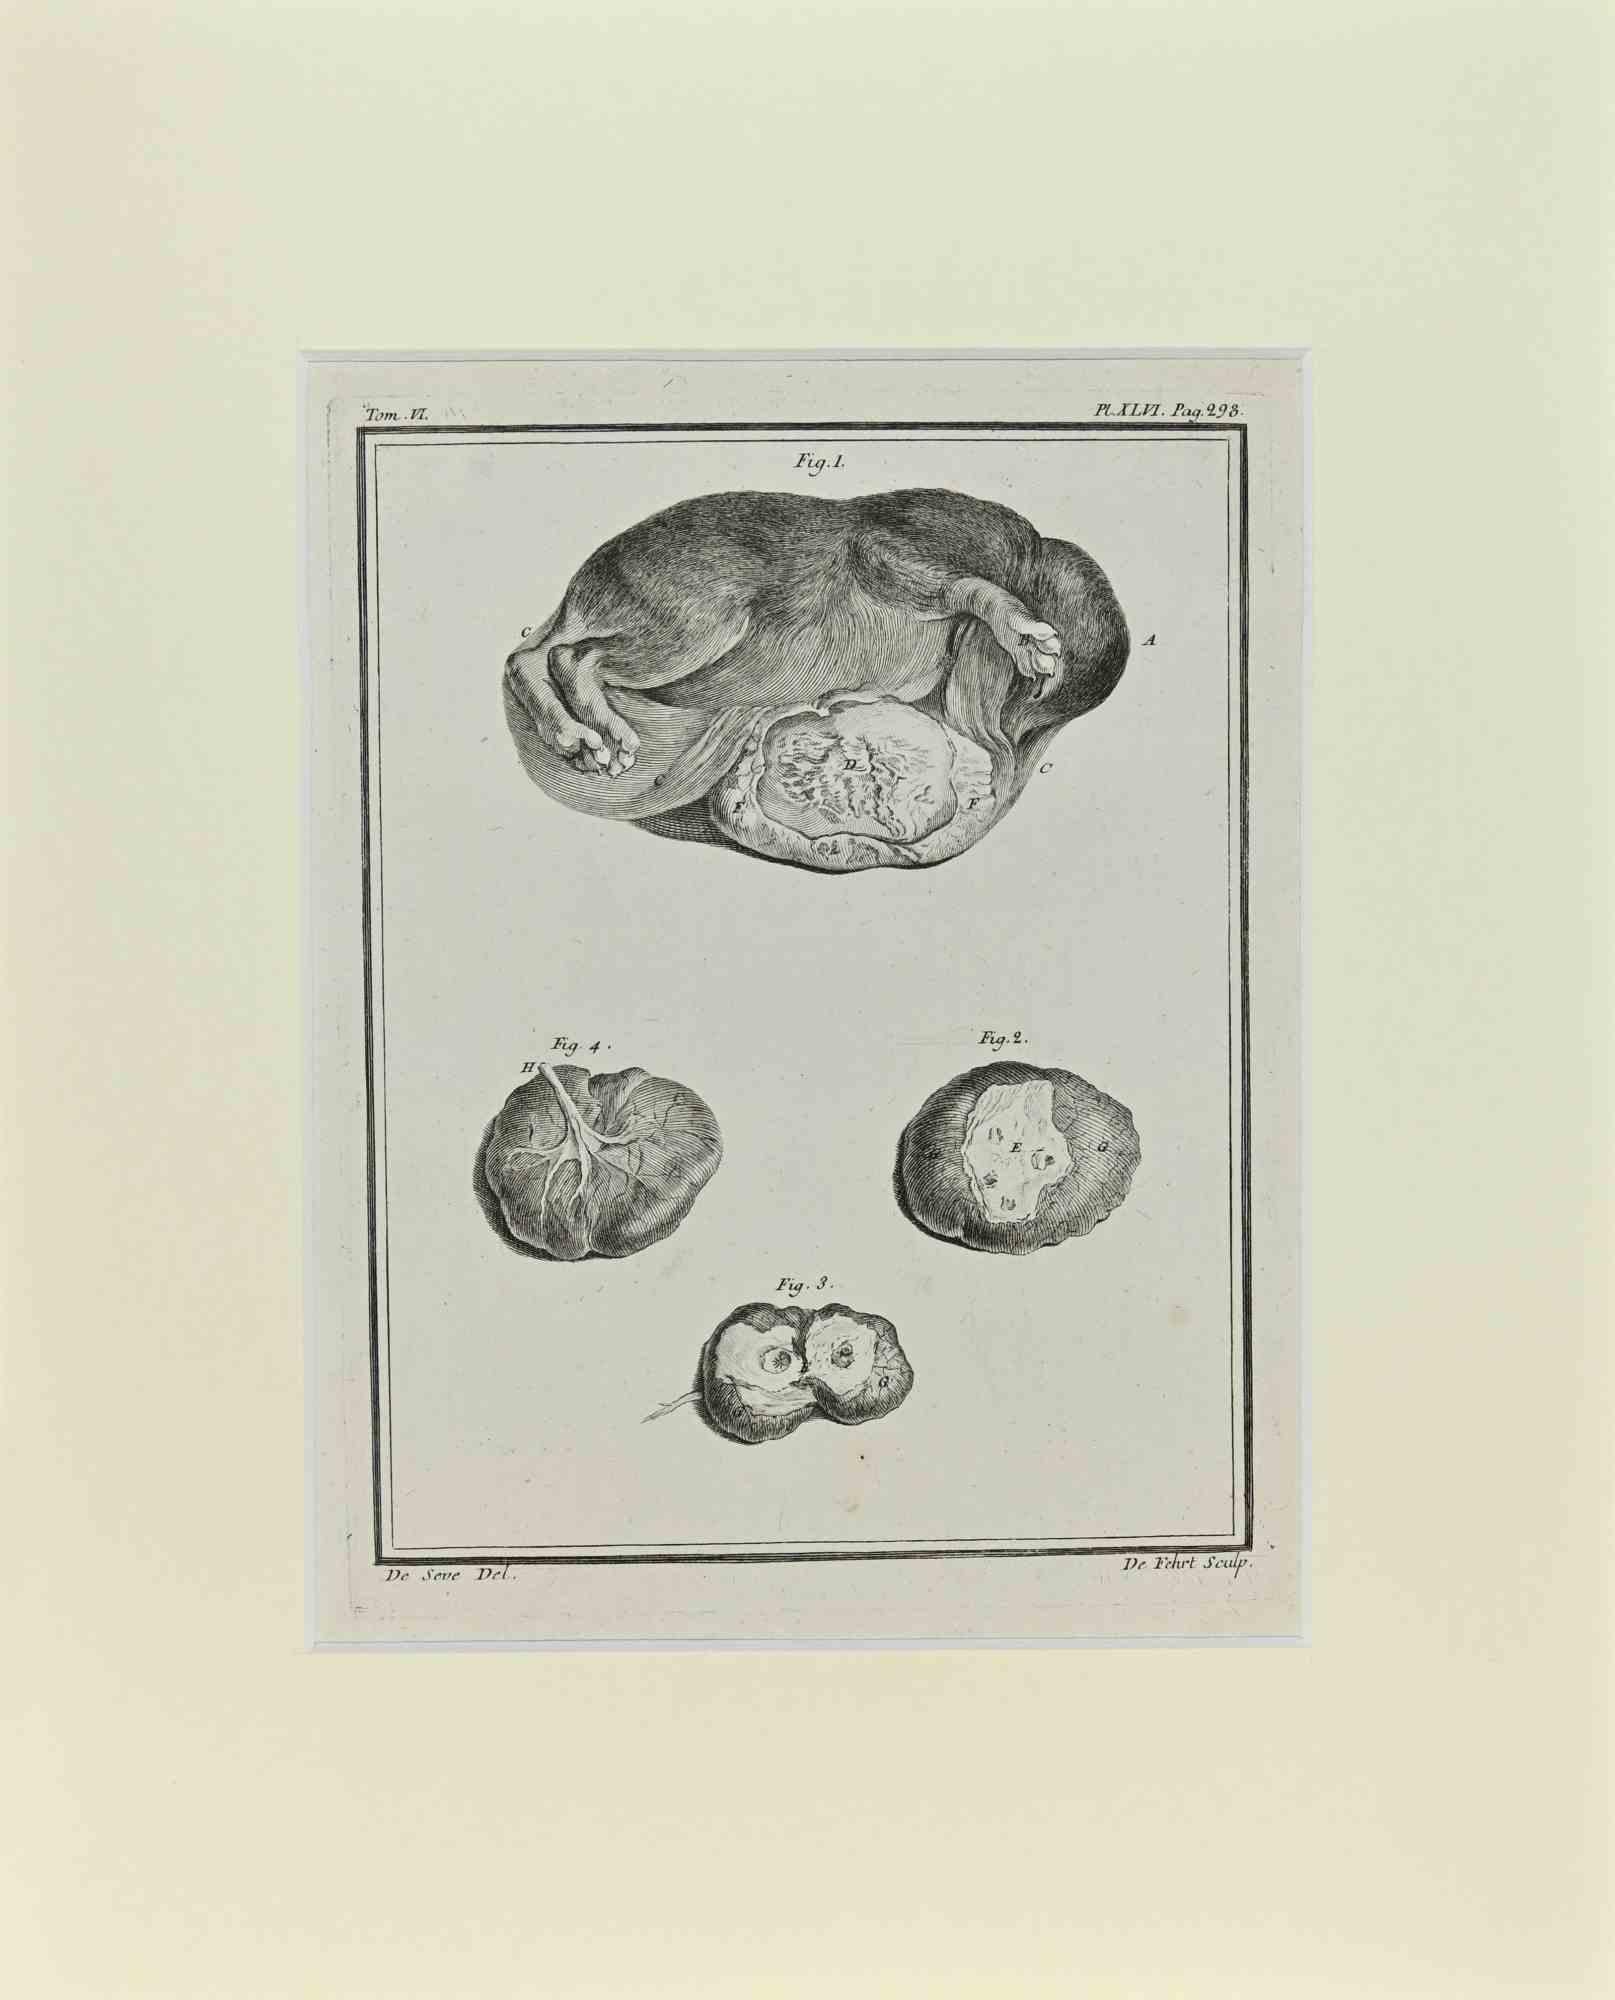 Jacques de Seve Animal Print - Fetus - Dog - Etching by Jacques De sève - 1771